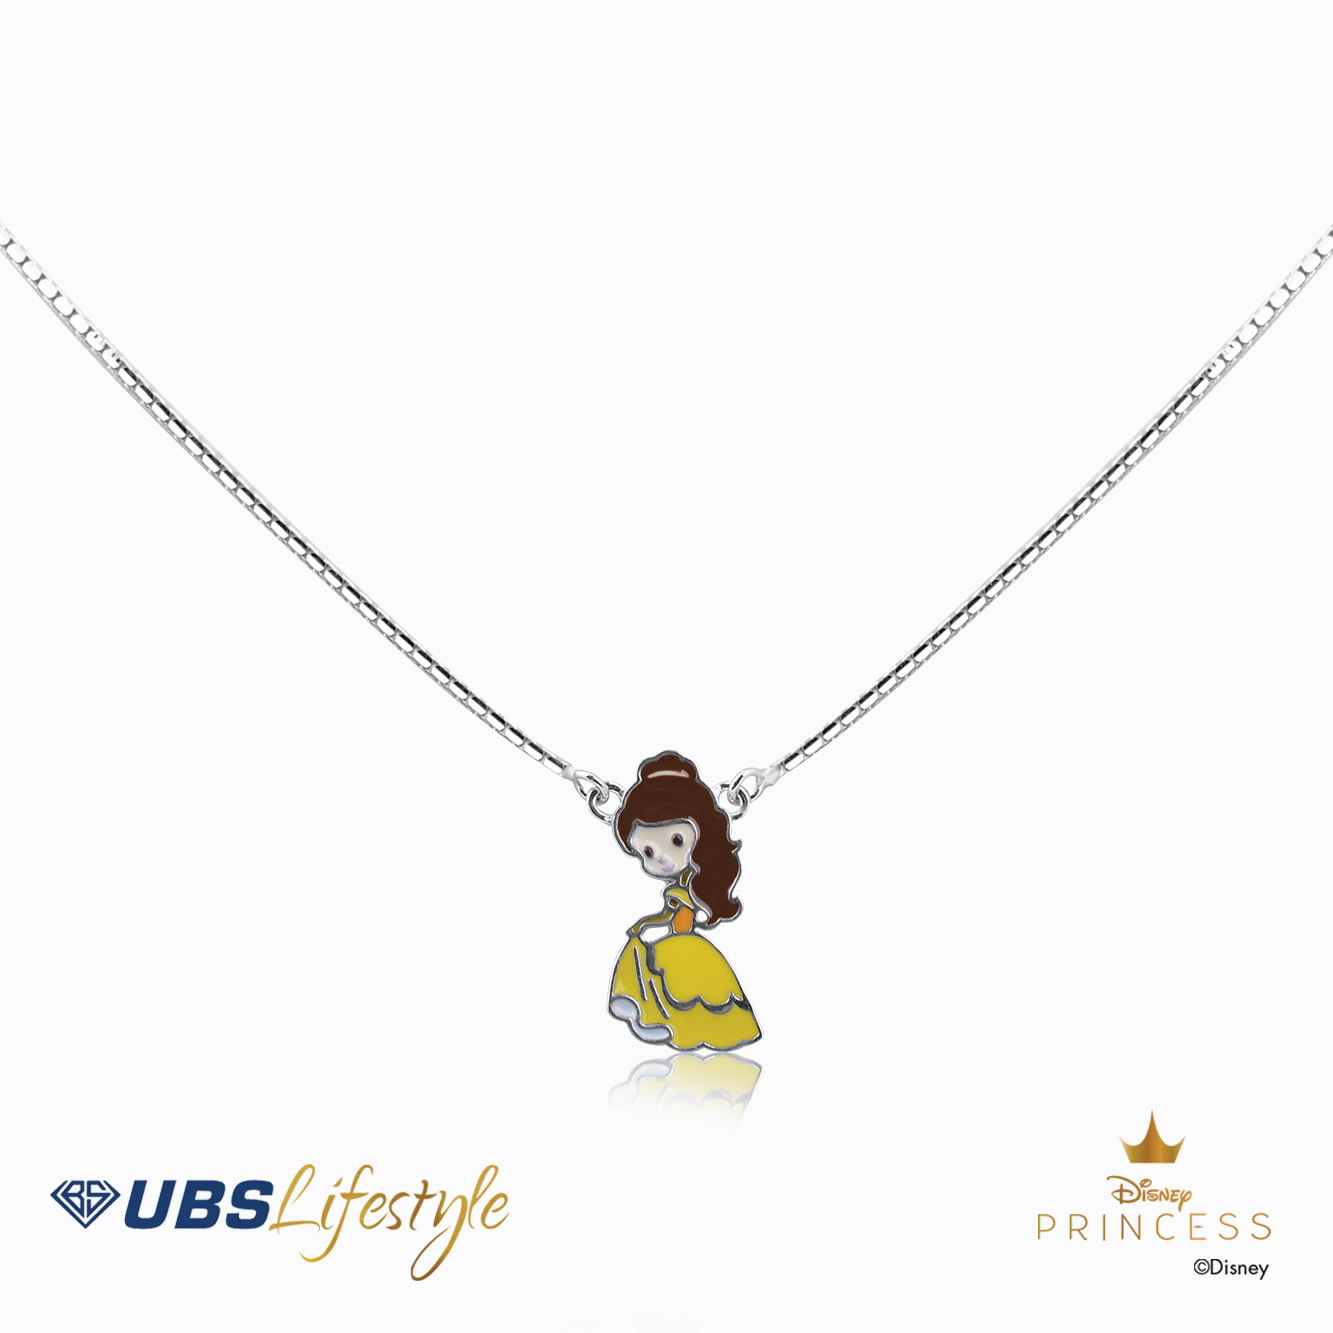 UBS Kalung Emas Anak Disney Princess Belle - Kky0150 - 17K